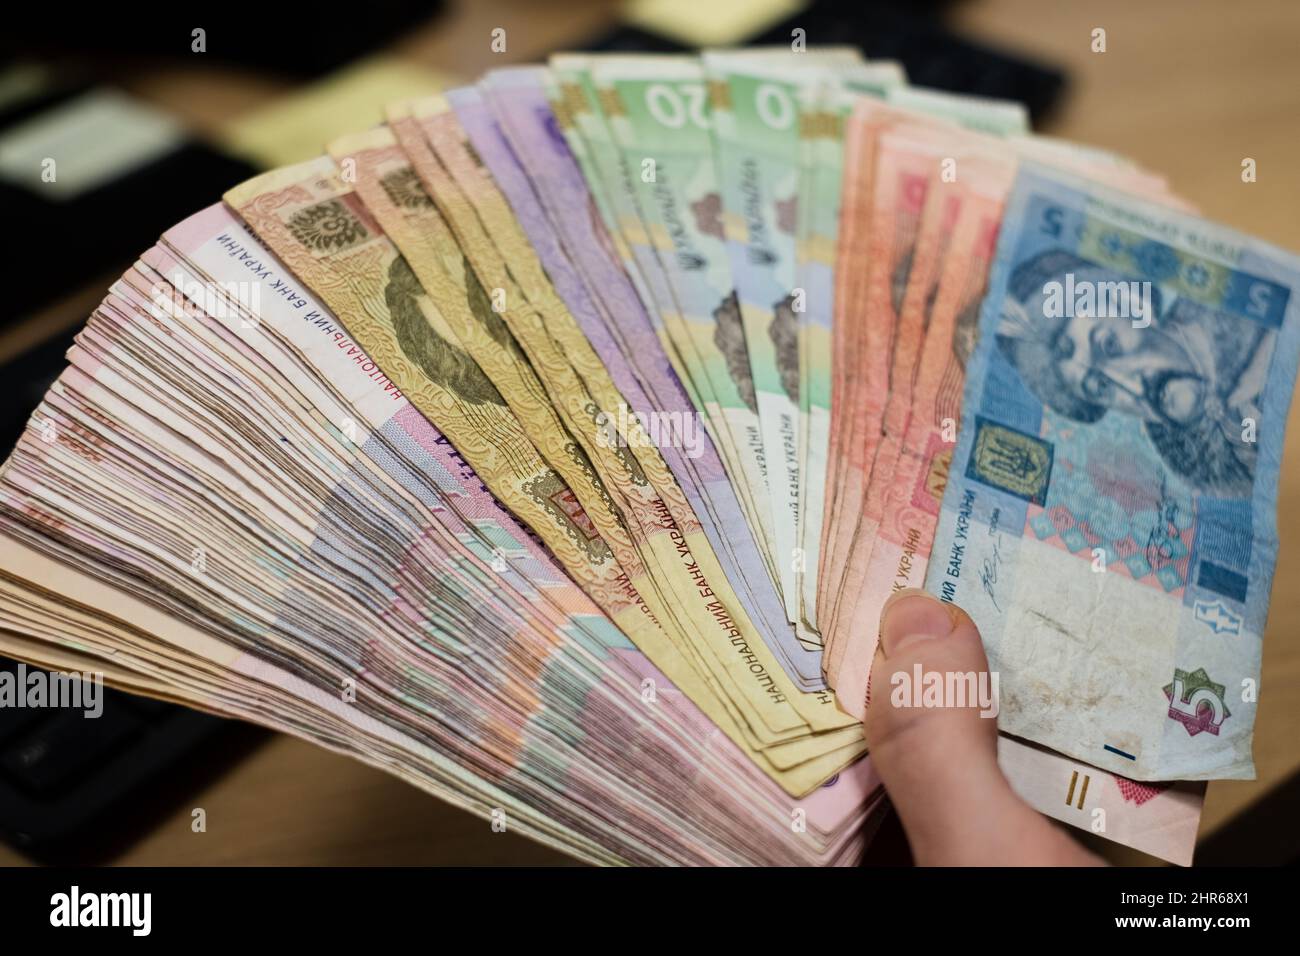 Denaro ucraino Ucraina hryvnia carta note (UAH). Grande mucchio di contanti grivna Ucraina. Il sistema bancario ucraino e il concetto di crisi economica. Foto Stock